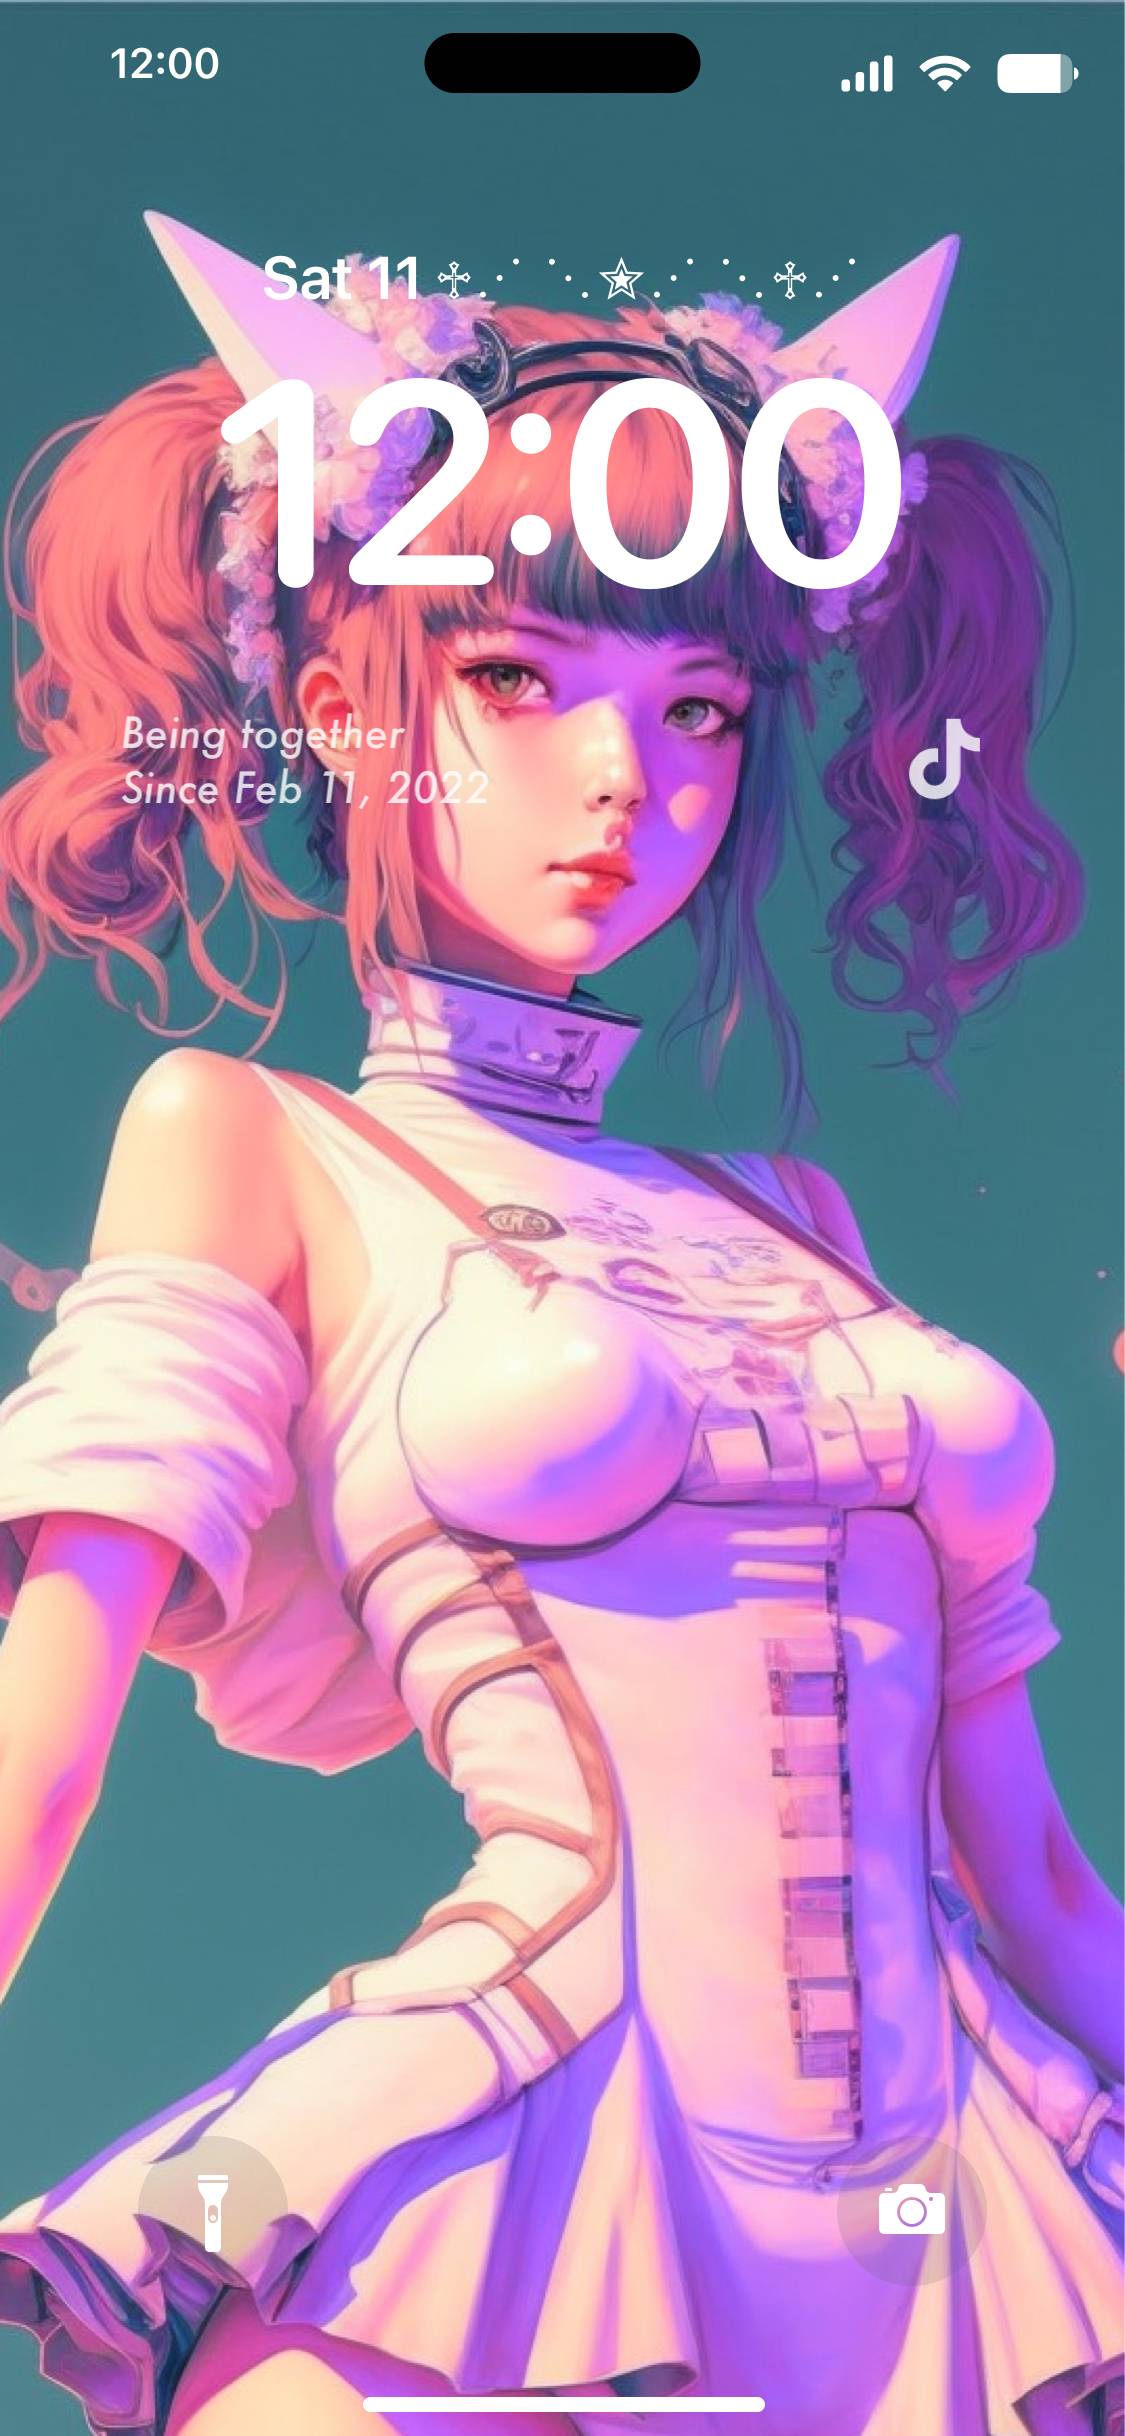 Cyberpunk girl lock screen 锁屏[6J3XZiCvg7JlsTzNcMWe]